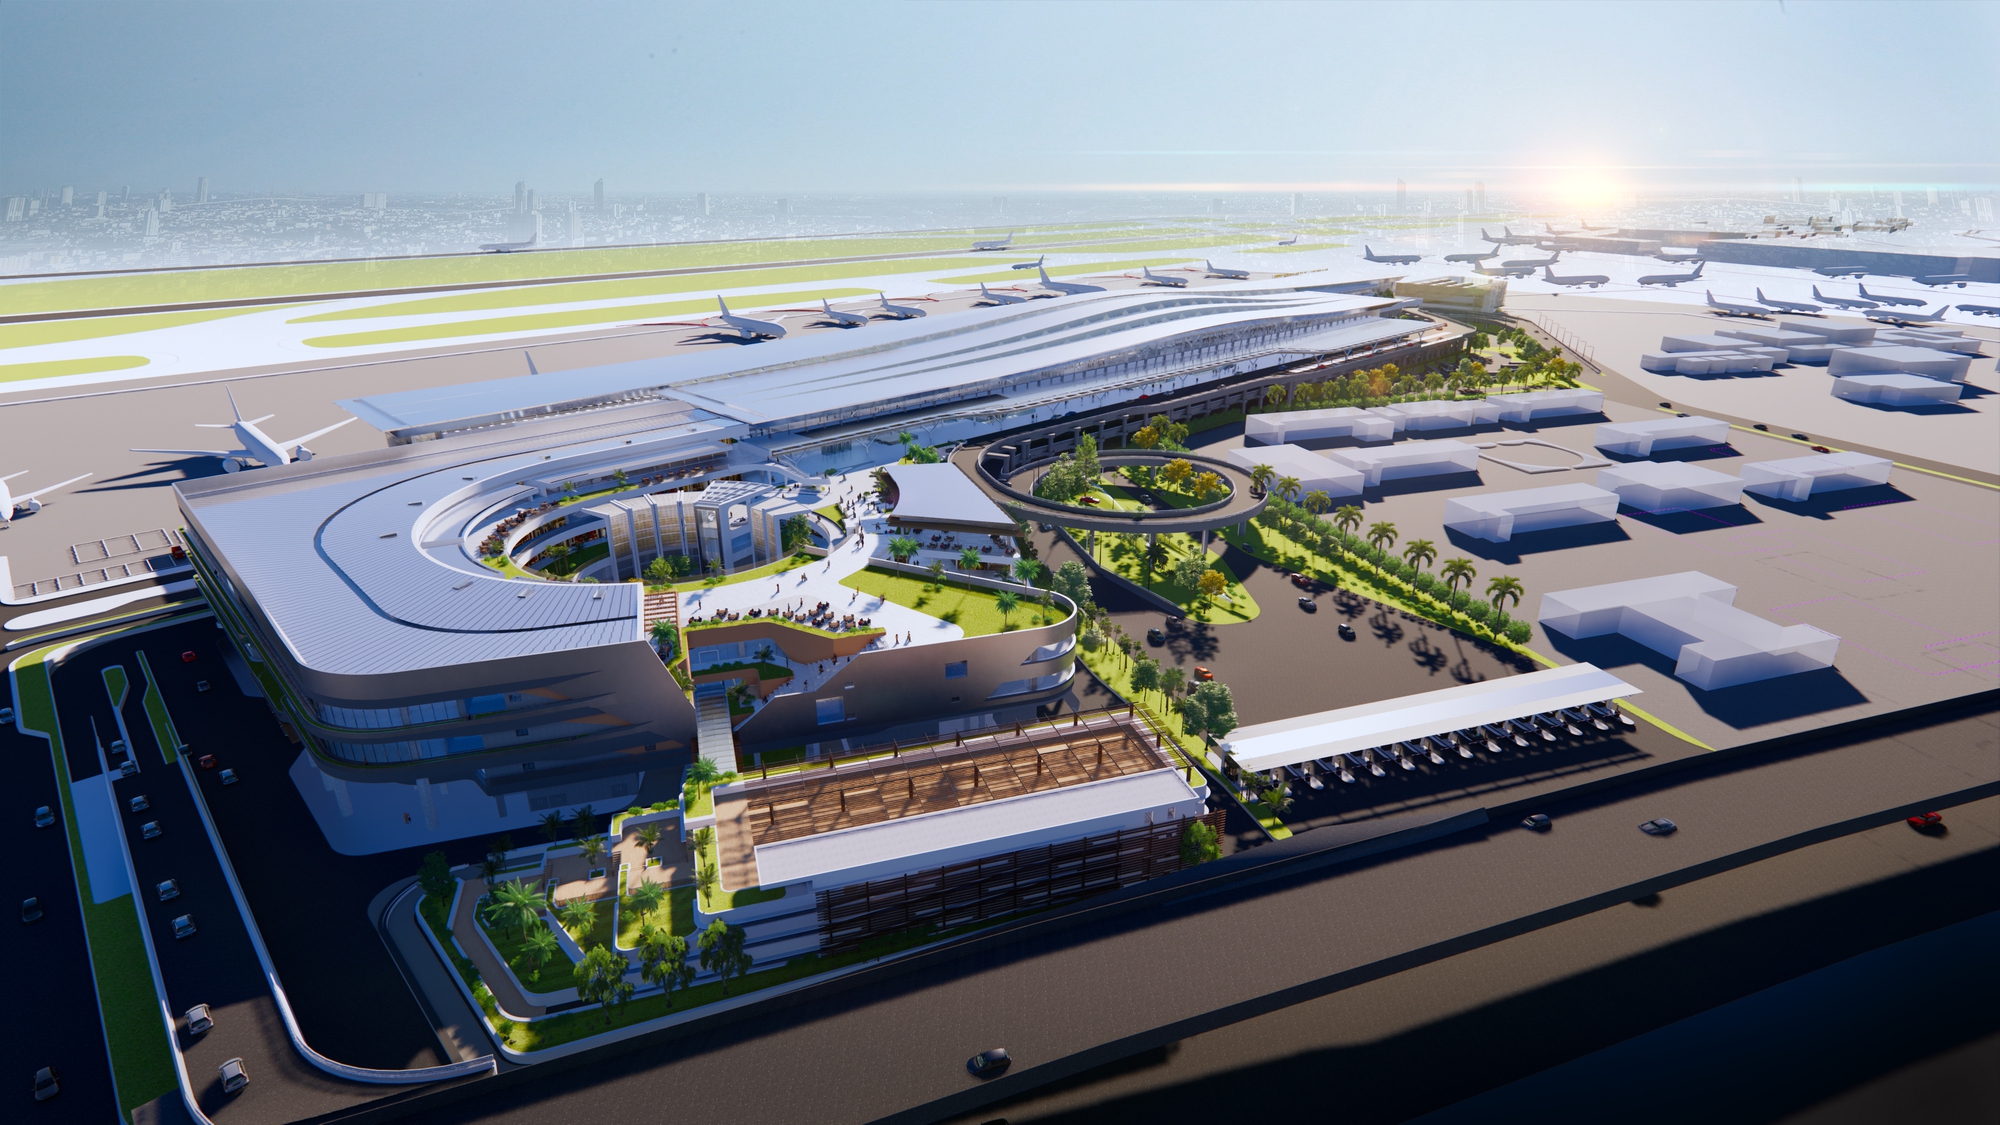 Hé lộ thiết kế nhà ga T3 sân bay Tân Sơn Nhất có gì đặc biệt? - Ảnh 2.